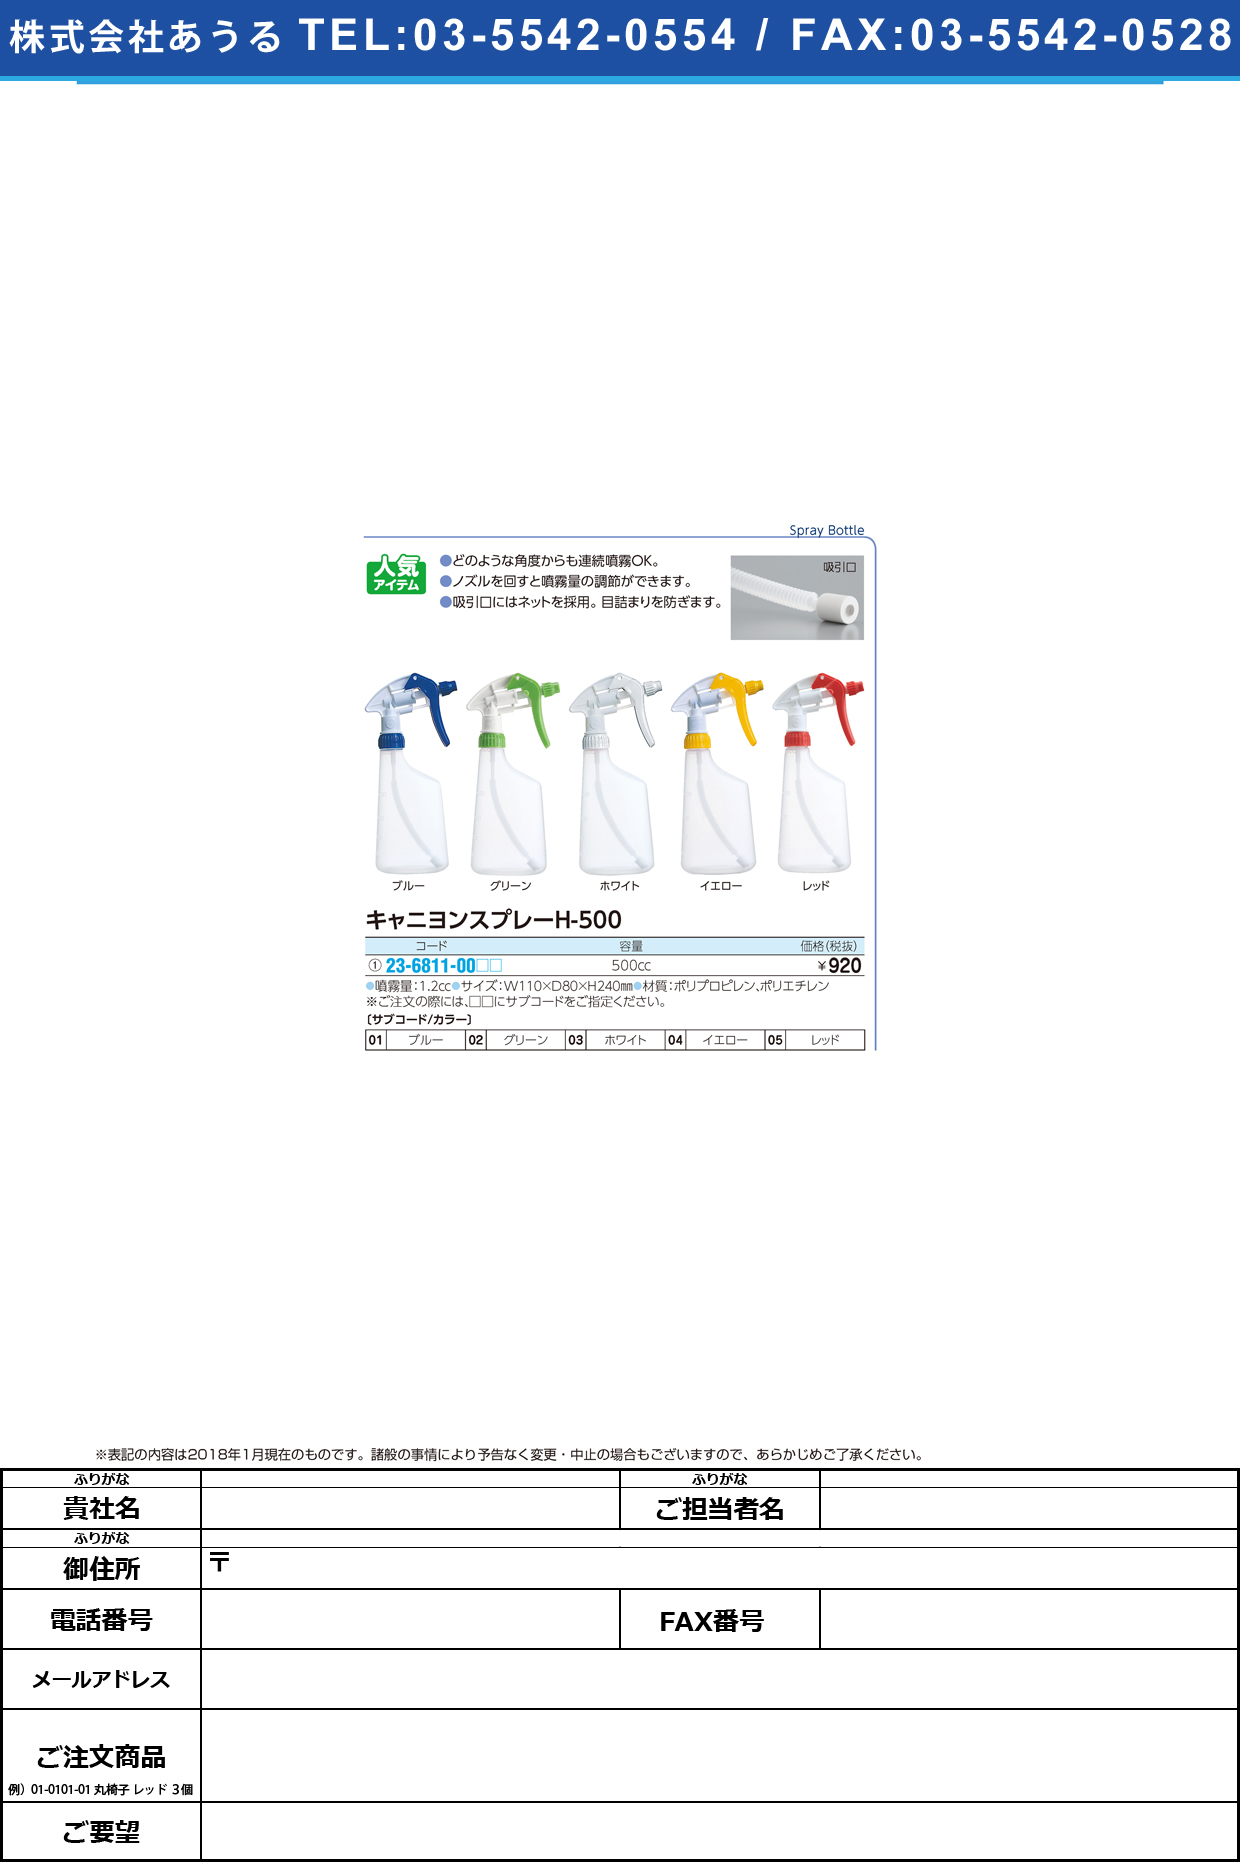 (23-6811-00)キャニヨンスプレー H-500(500CC) ｷｬﾆﾖﾝｽﾌﾟﾚｰ ブルー(山崎産業)【1個単位】【2019年カタログ商品】